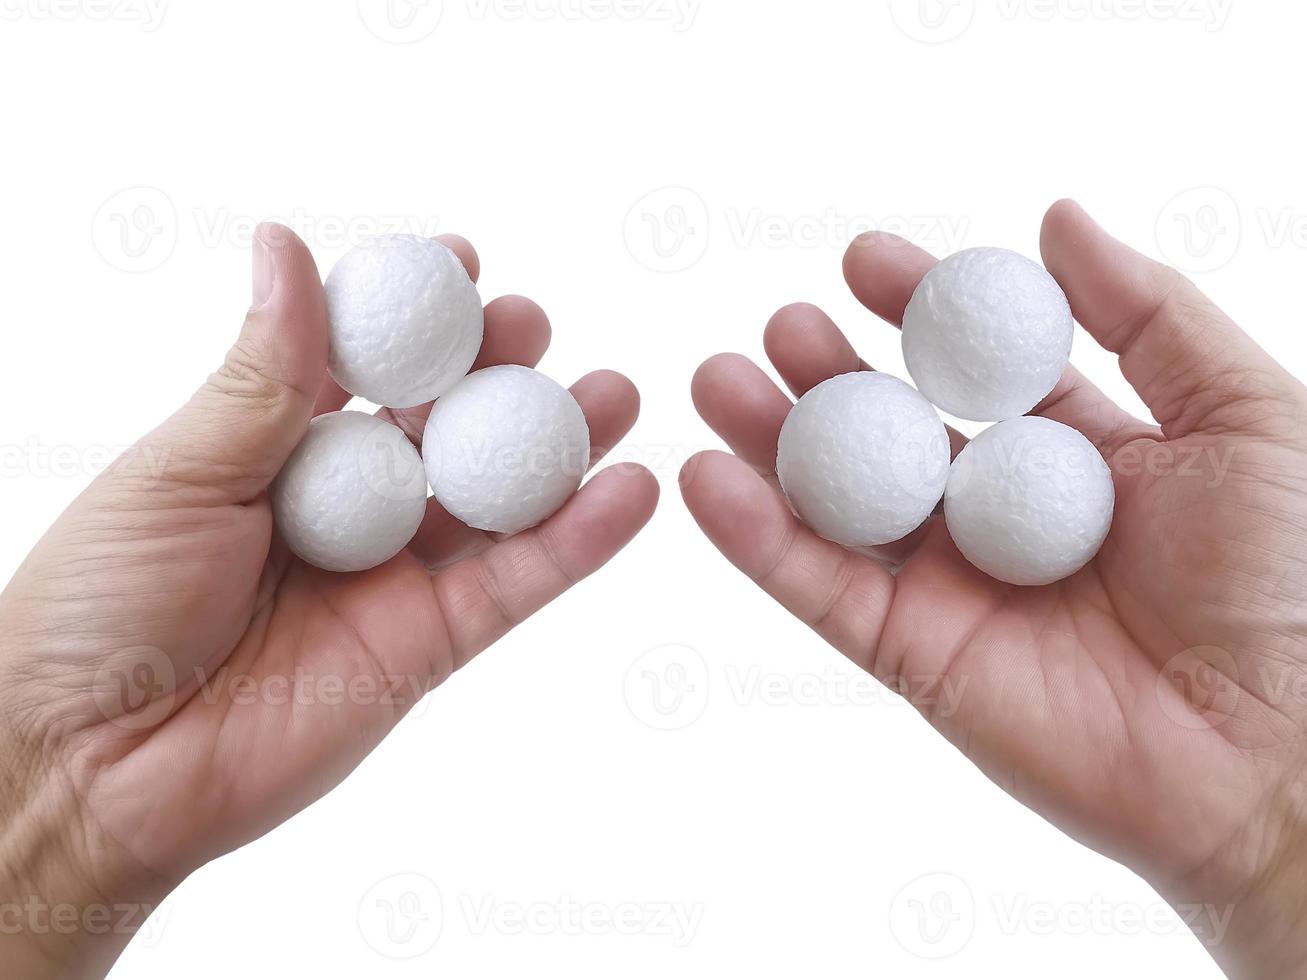 iemands hand met drie witte lege piepschuim bal tegen de witte achtergrond foto